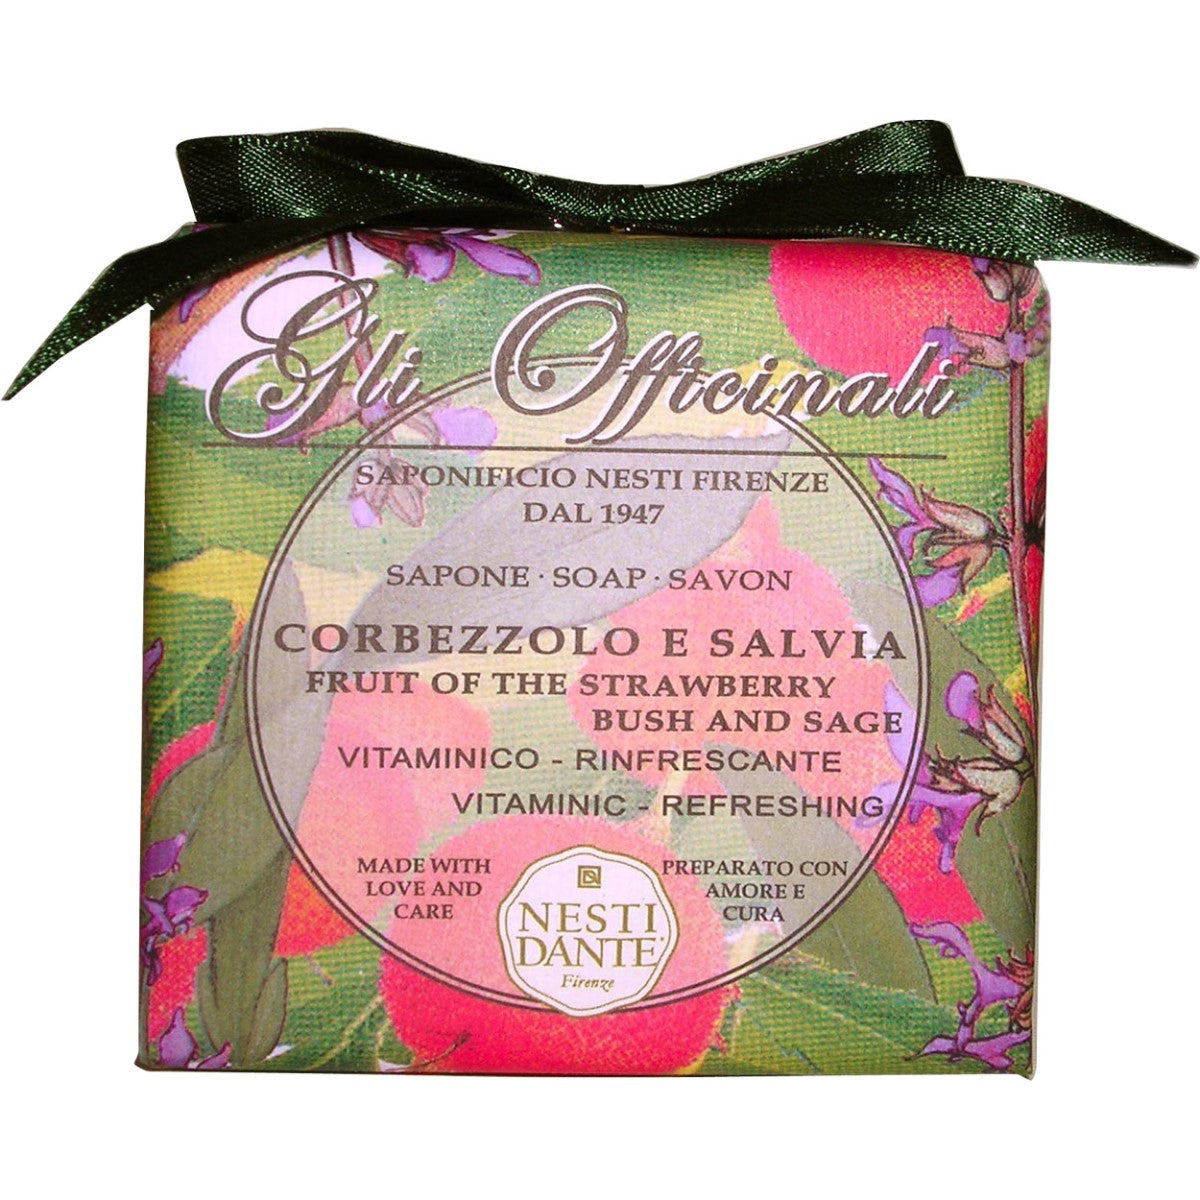 Primary Image of Gli Officinali Strawberry Bush and Sage Soap